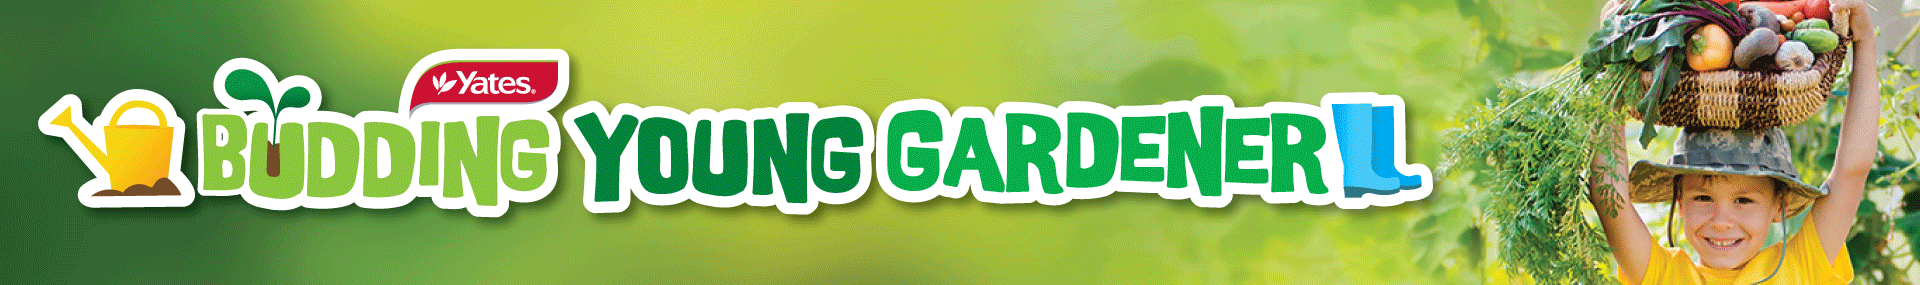 budding-gardener-logo-web-2020v3